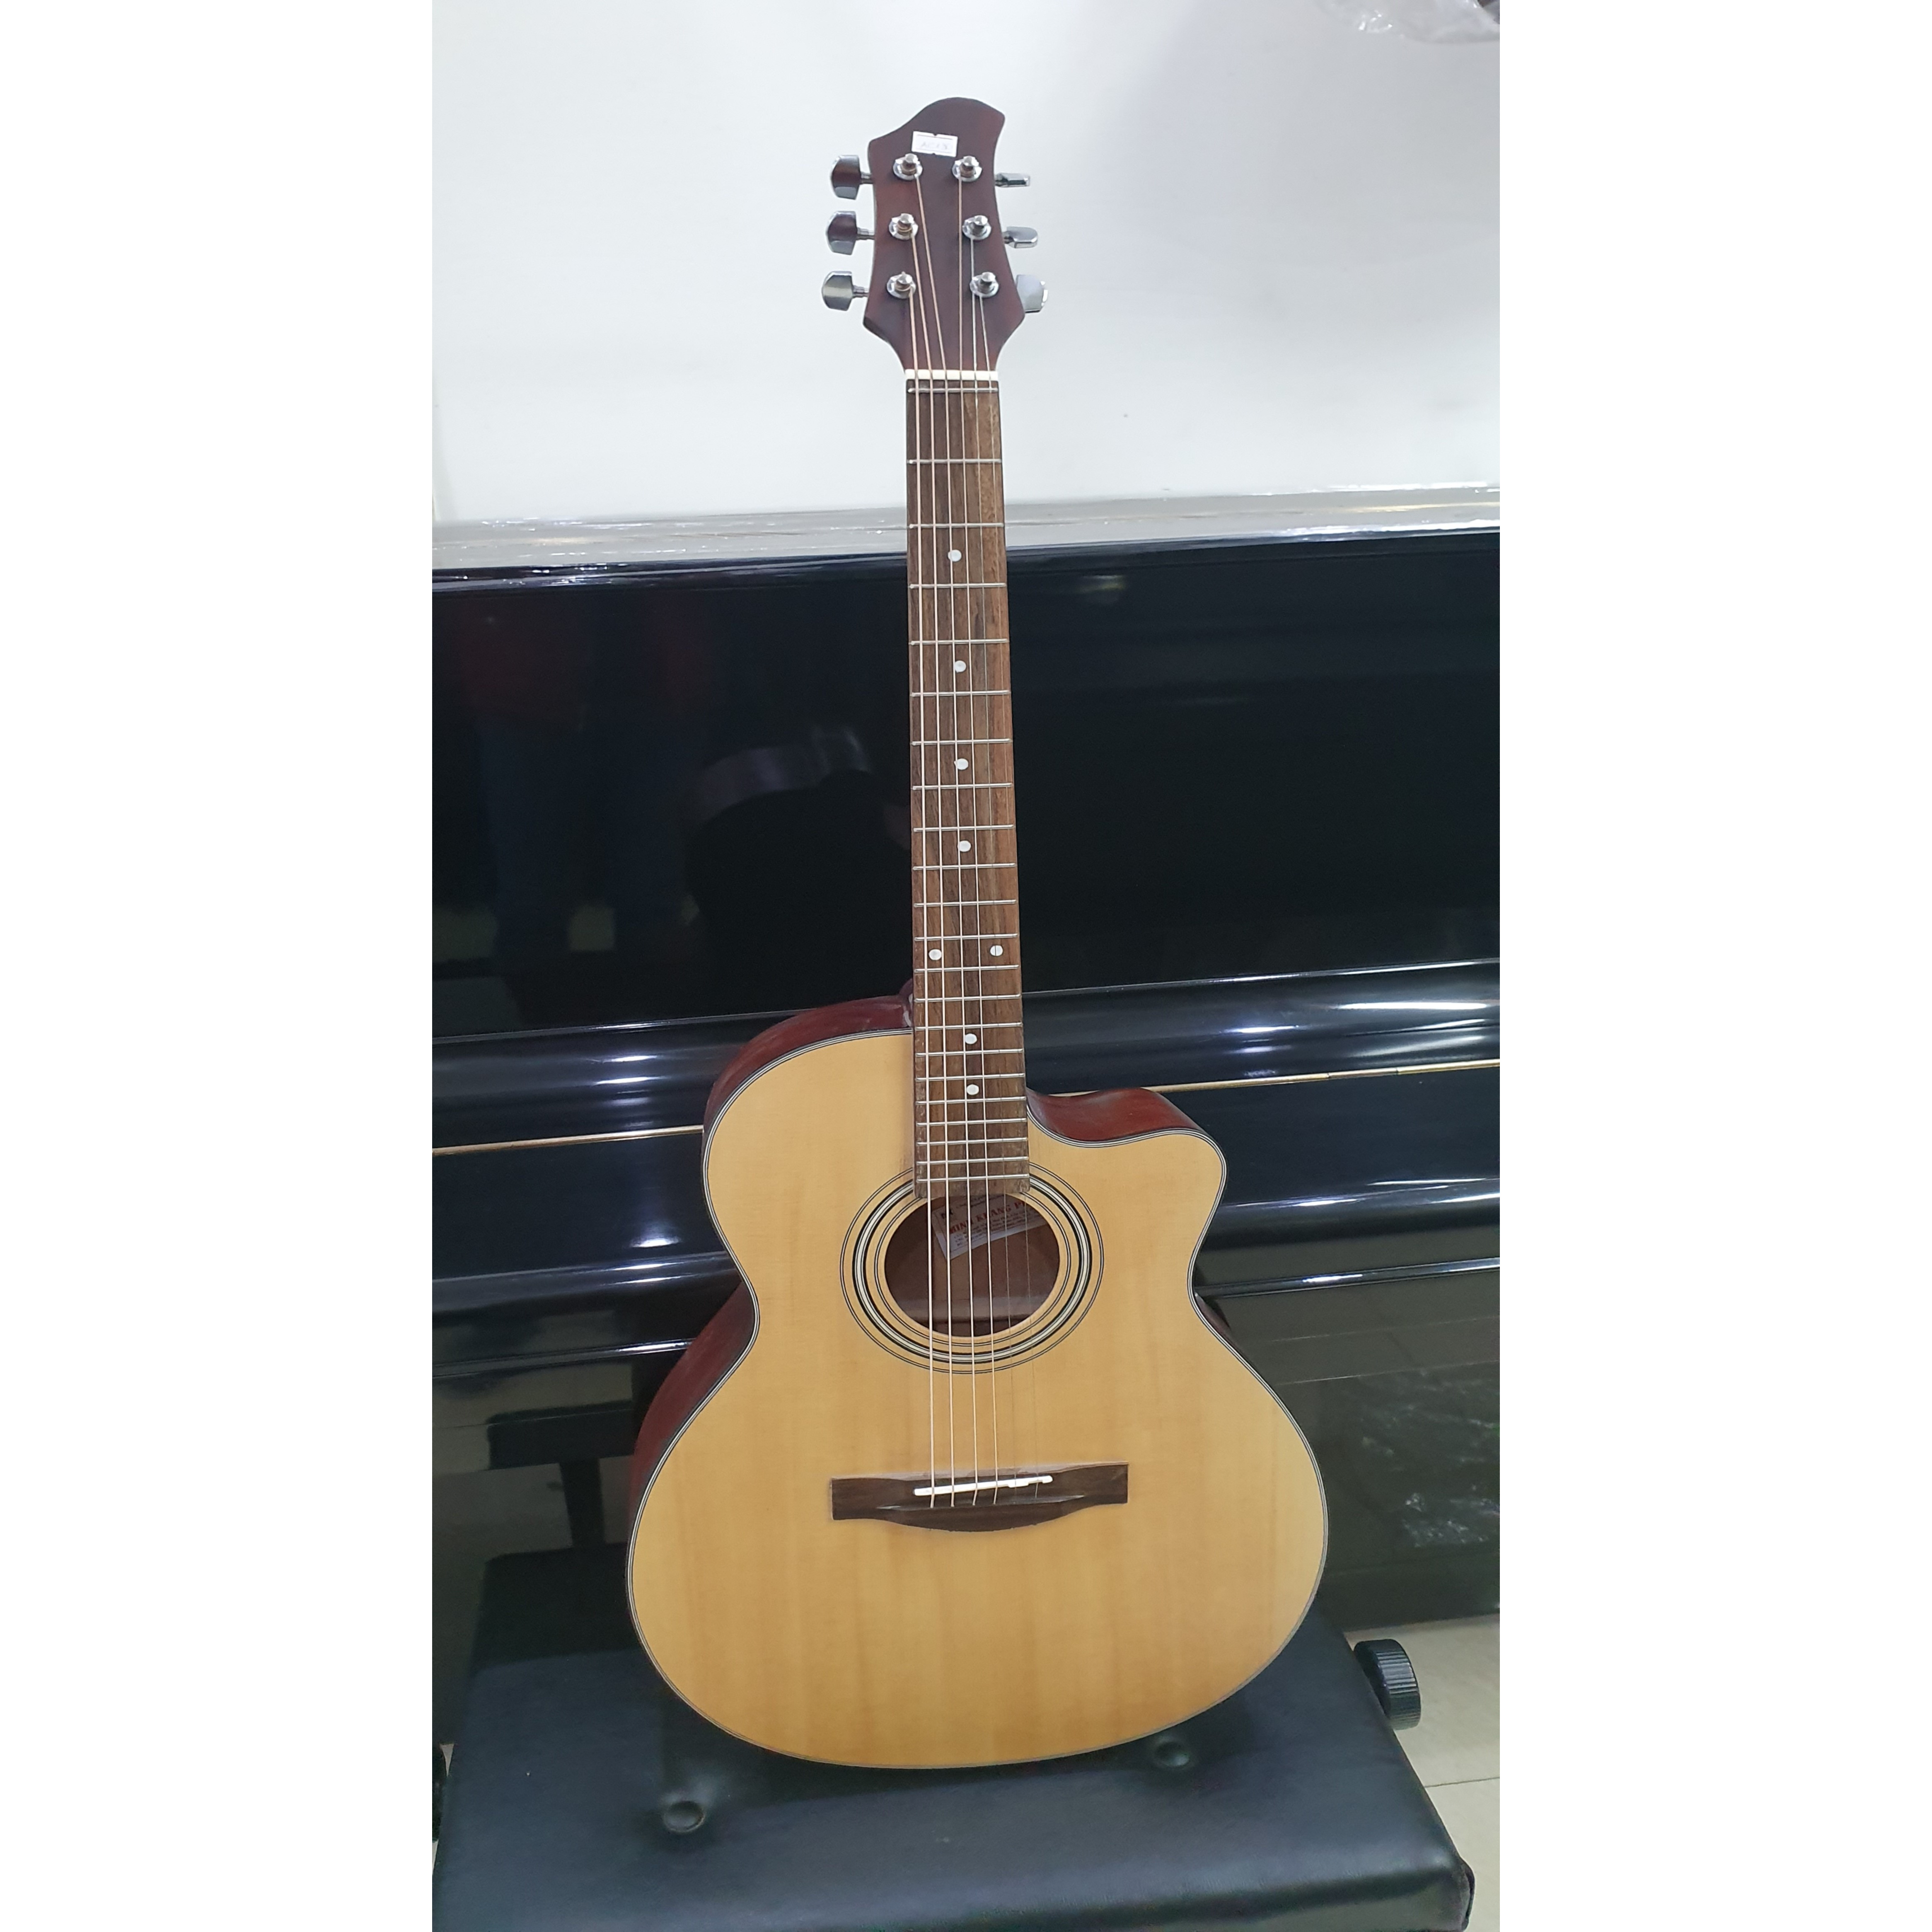 Đàn guitar Acoustic thùng eo MCAC135, size 4, vân gỗ, kèm bao da, 1 bộ dây ,